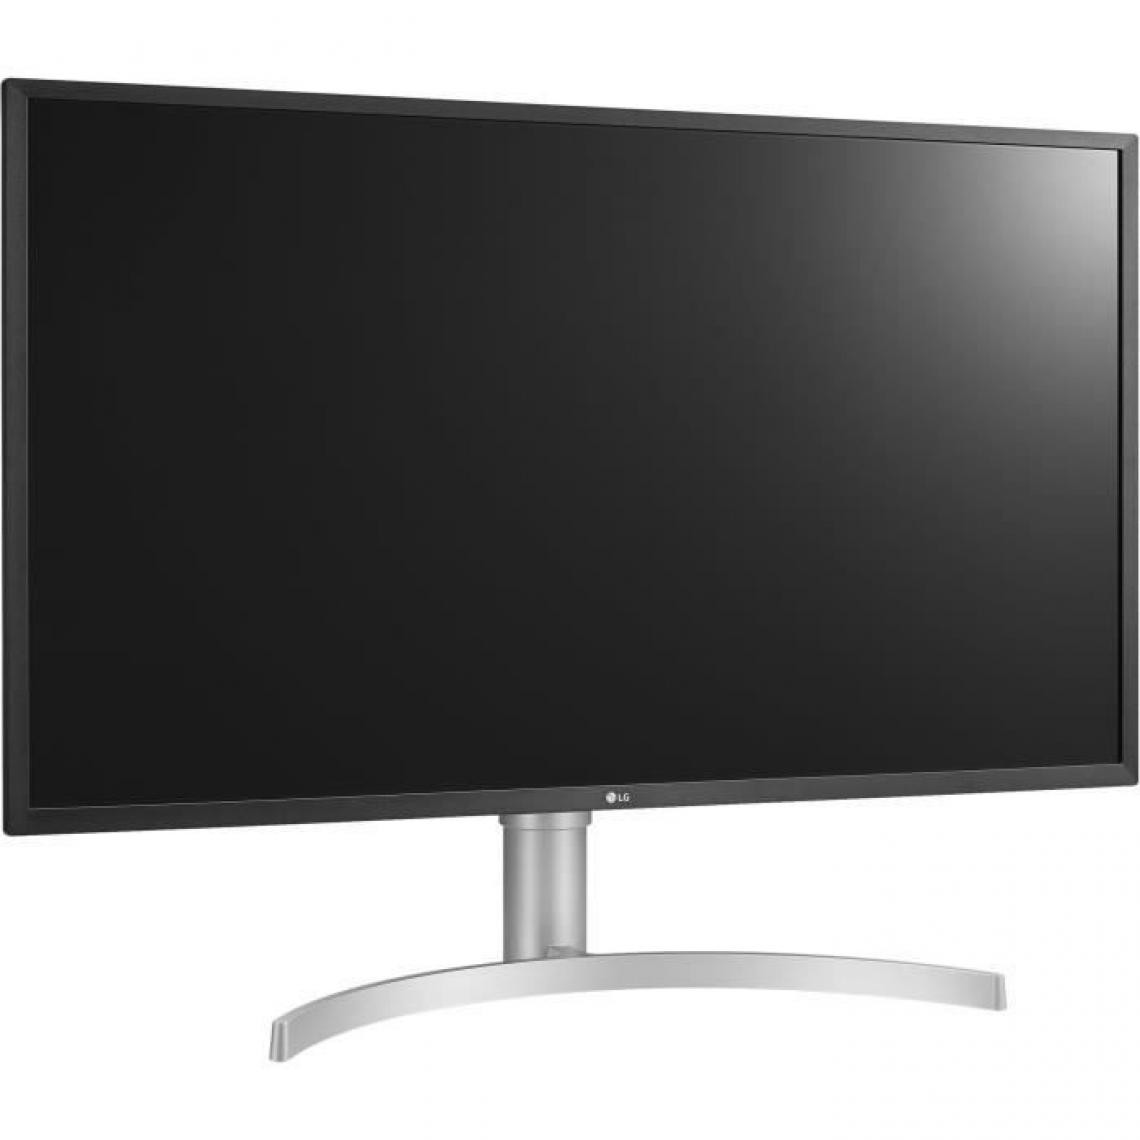 LG - Ecran PC - LG - 32UL750 - 32 4K - Dalle VA - 4 ms - 60 Hz - 2 x HDMI / DisplayPort - AMD FreeSync - Moniteur PC